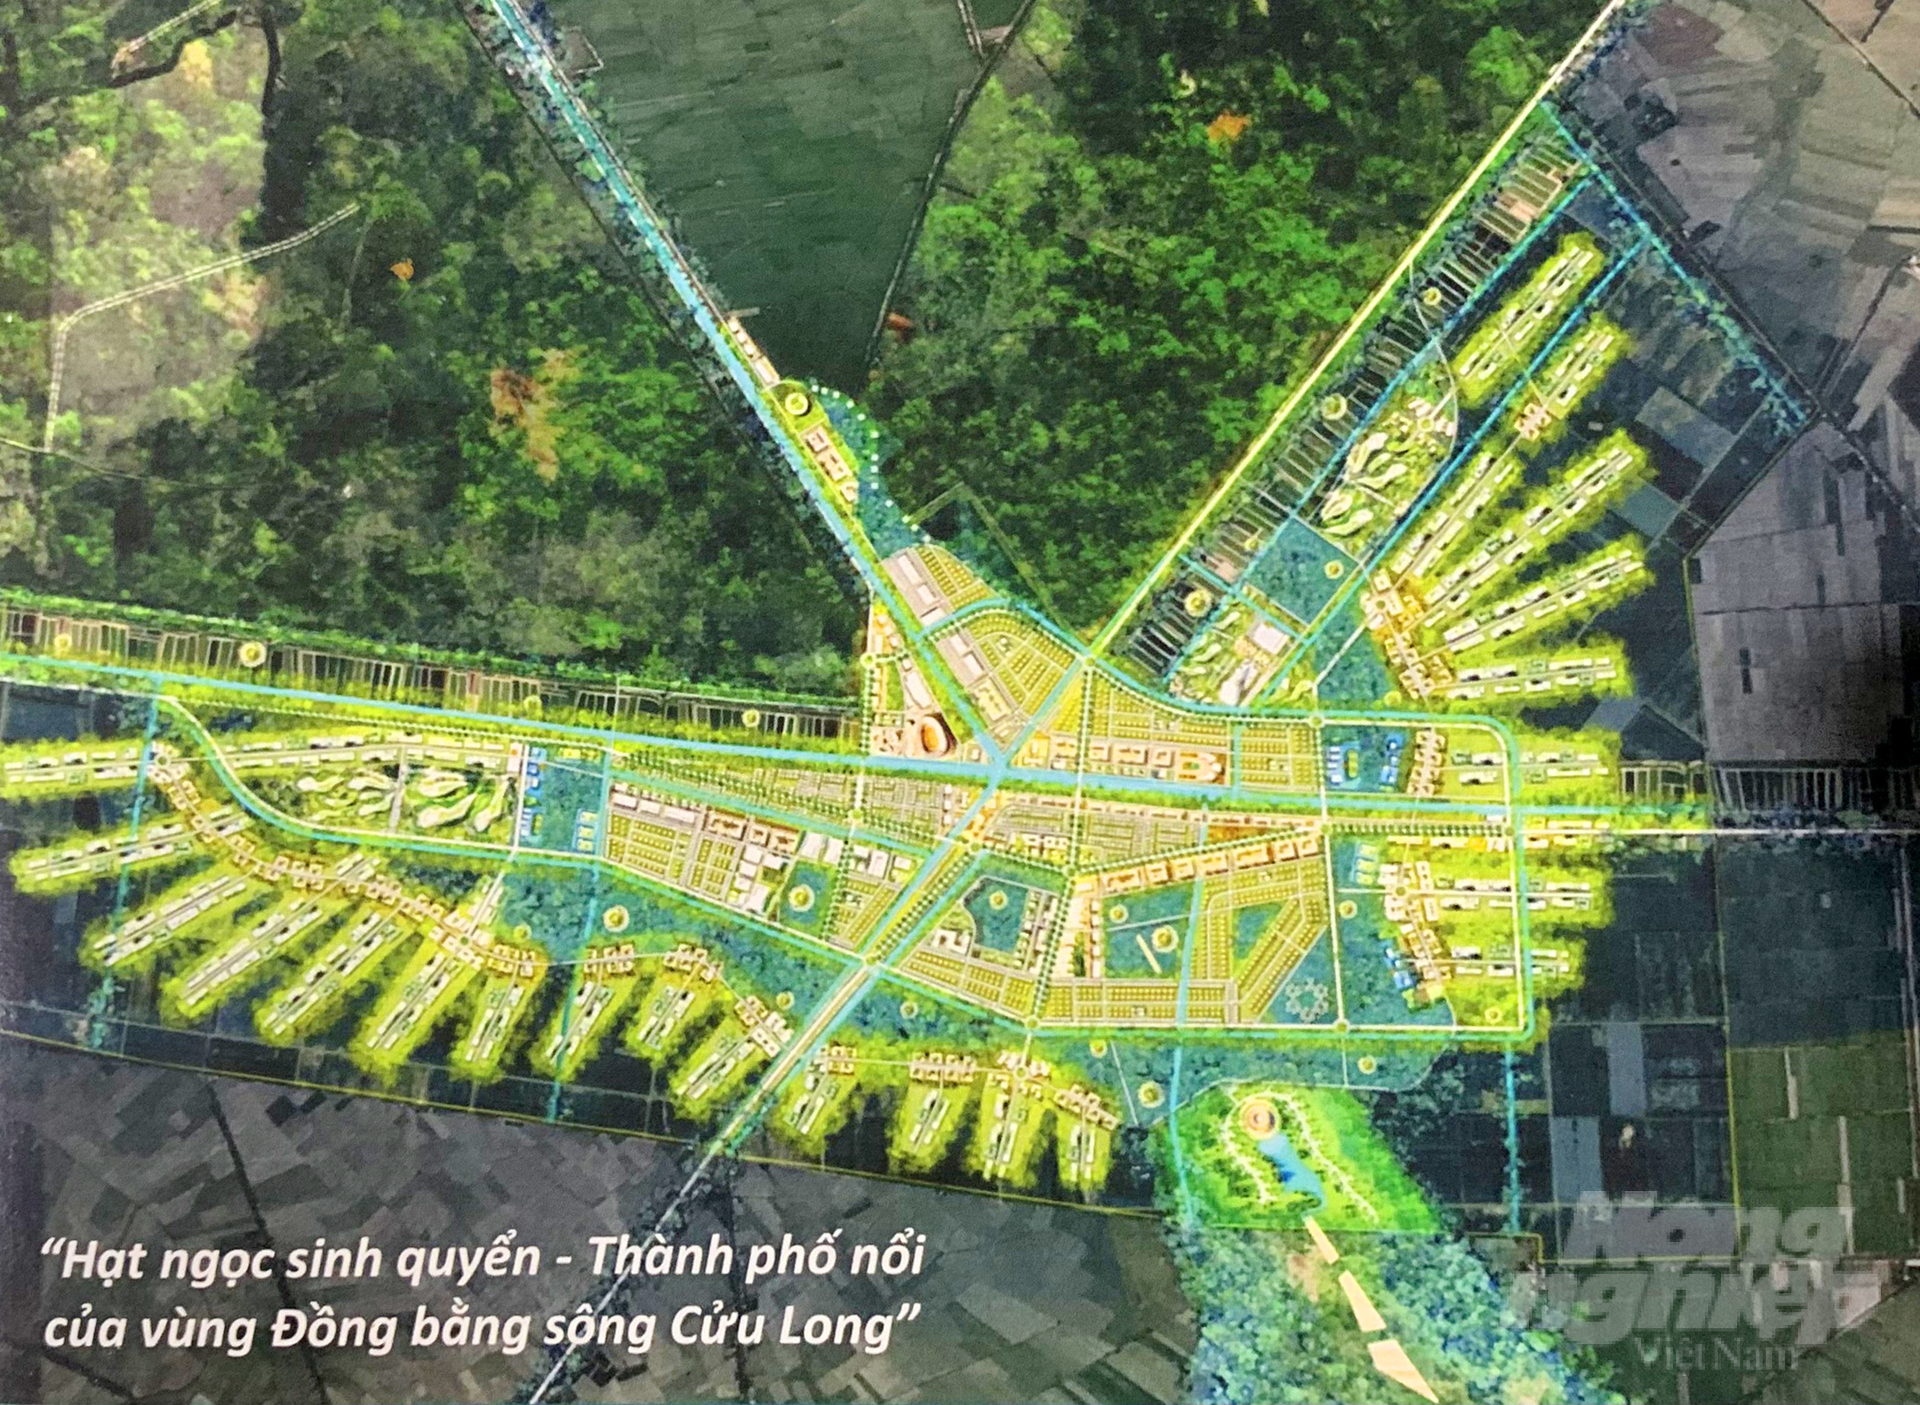 Tam Nông định hướng chiến lược phát triển thị trấn Tràm Chim, trở thành 'Hạt ngọc sinh quyển - thành phố nổi của vùng ĐBSCL'. Ảnh: Lê Hoàng Vũ.